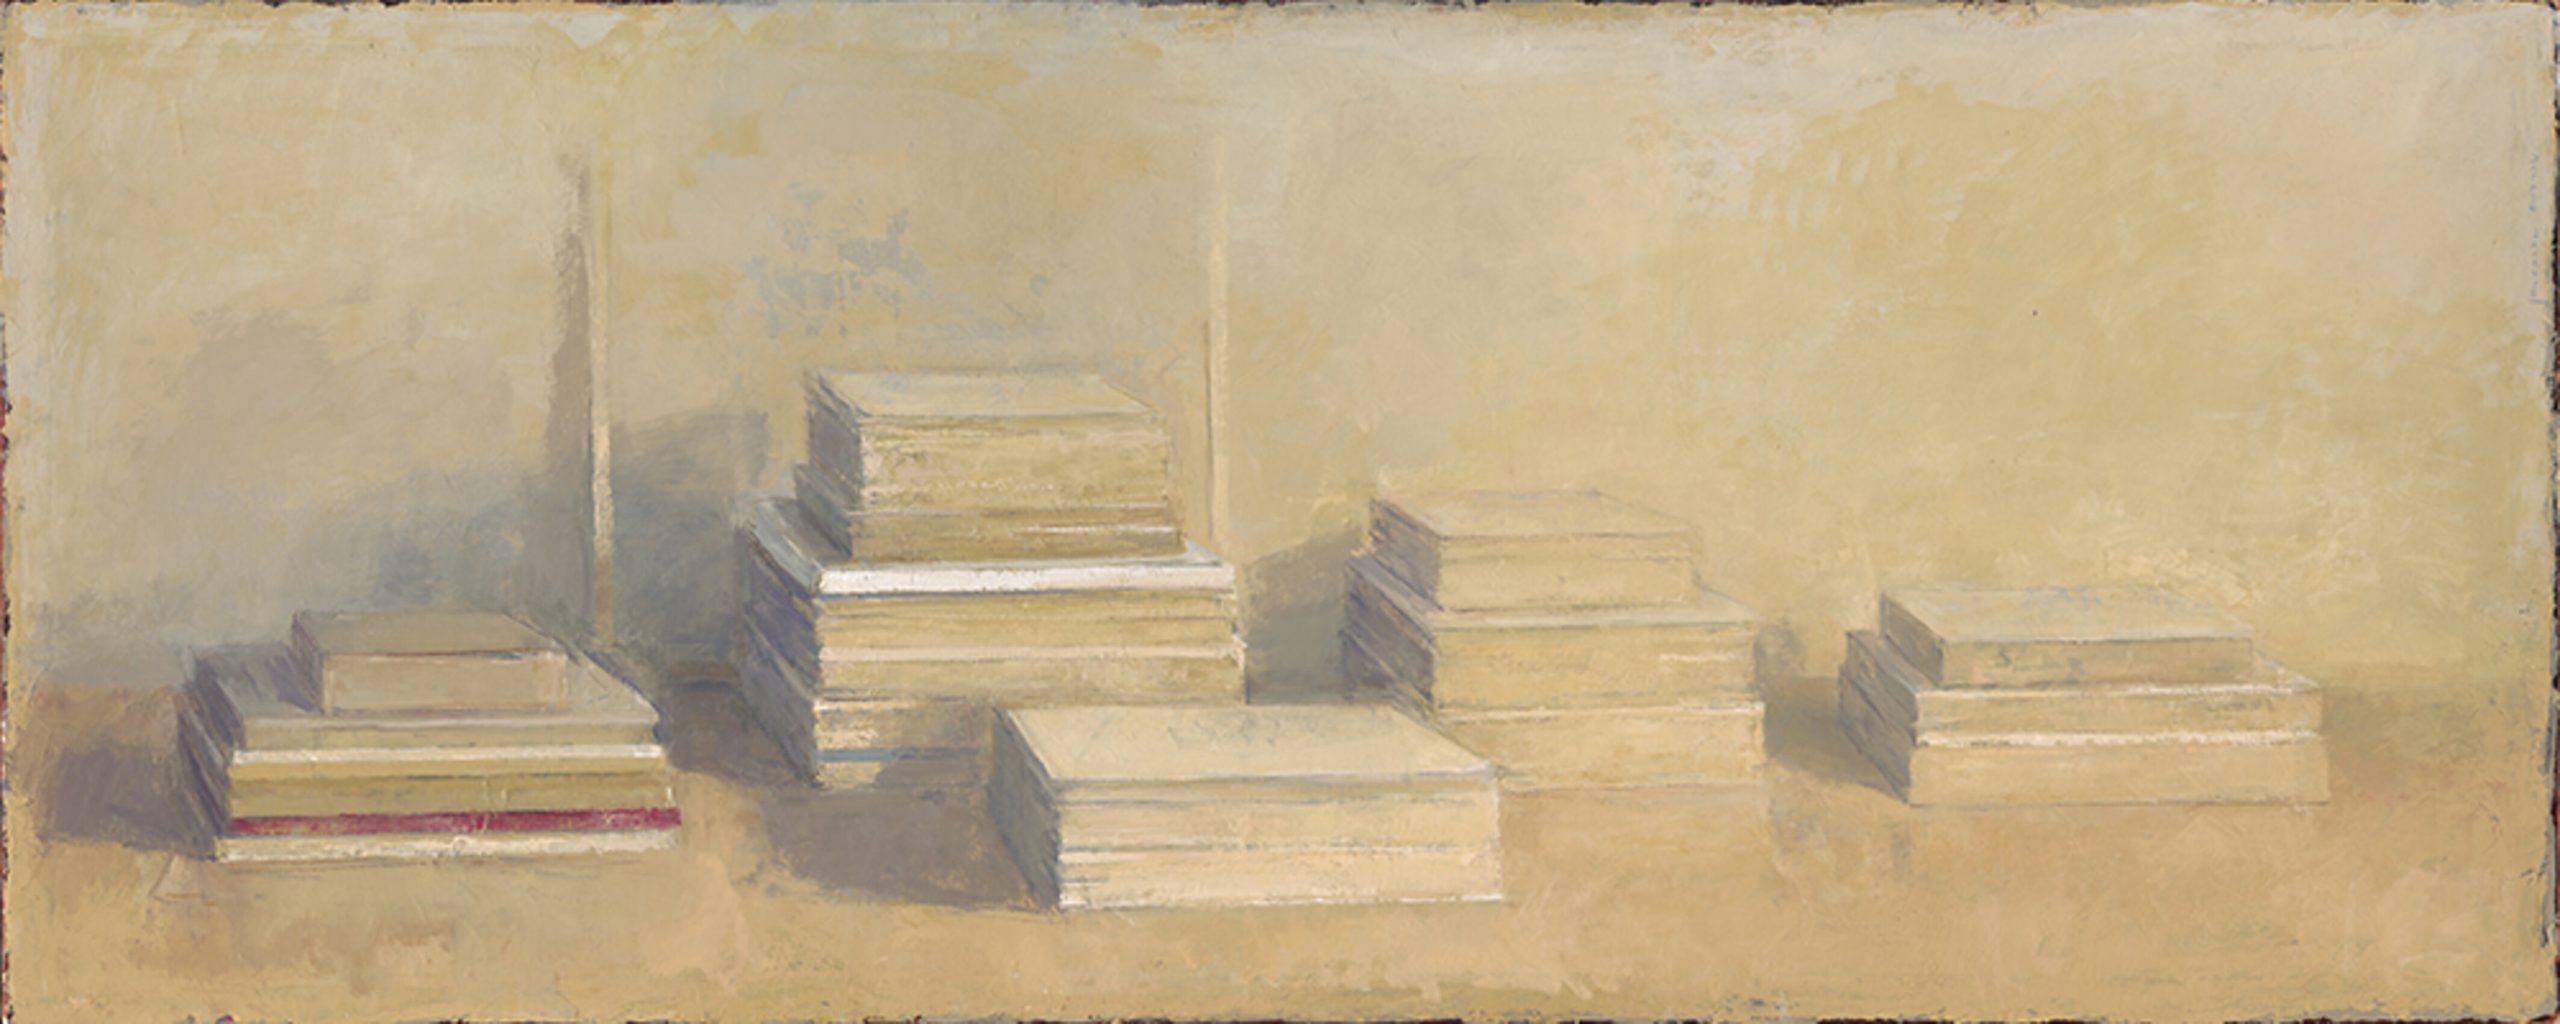 neoseries-orden-de-libros-1478-x1700-scaled